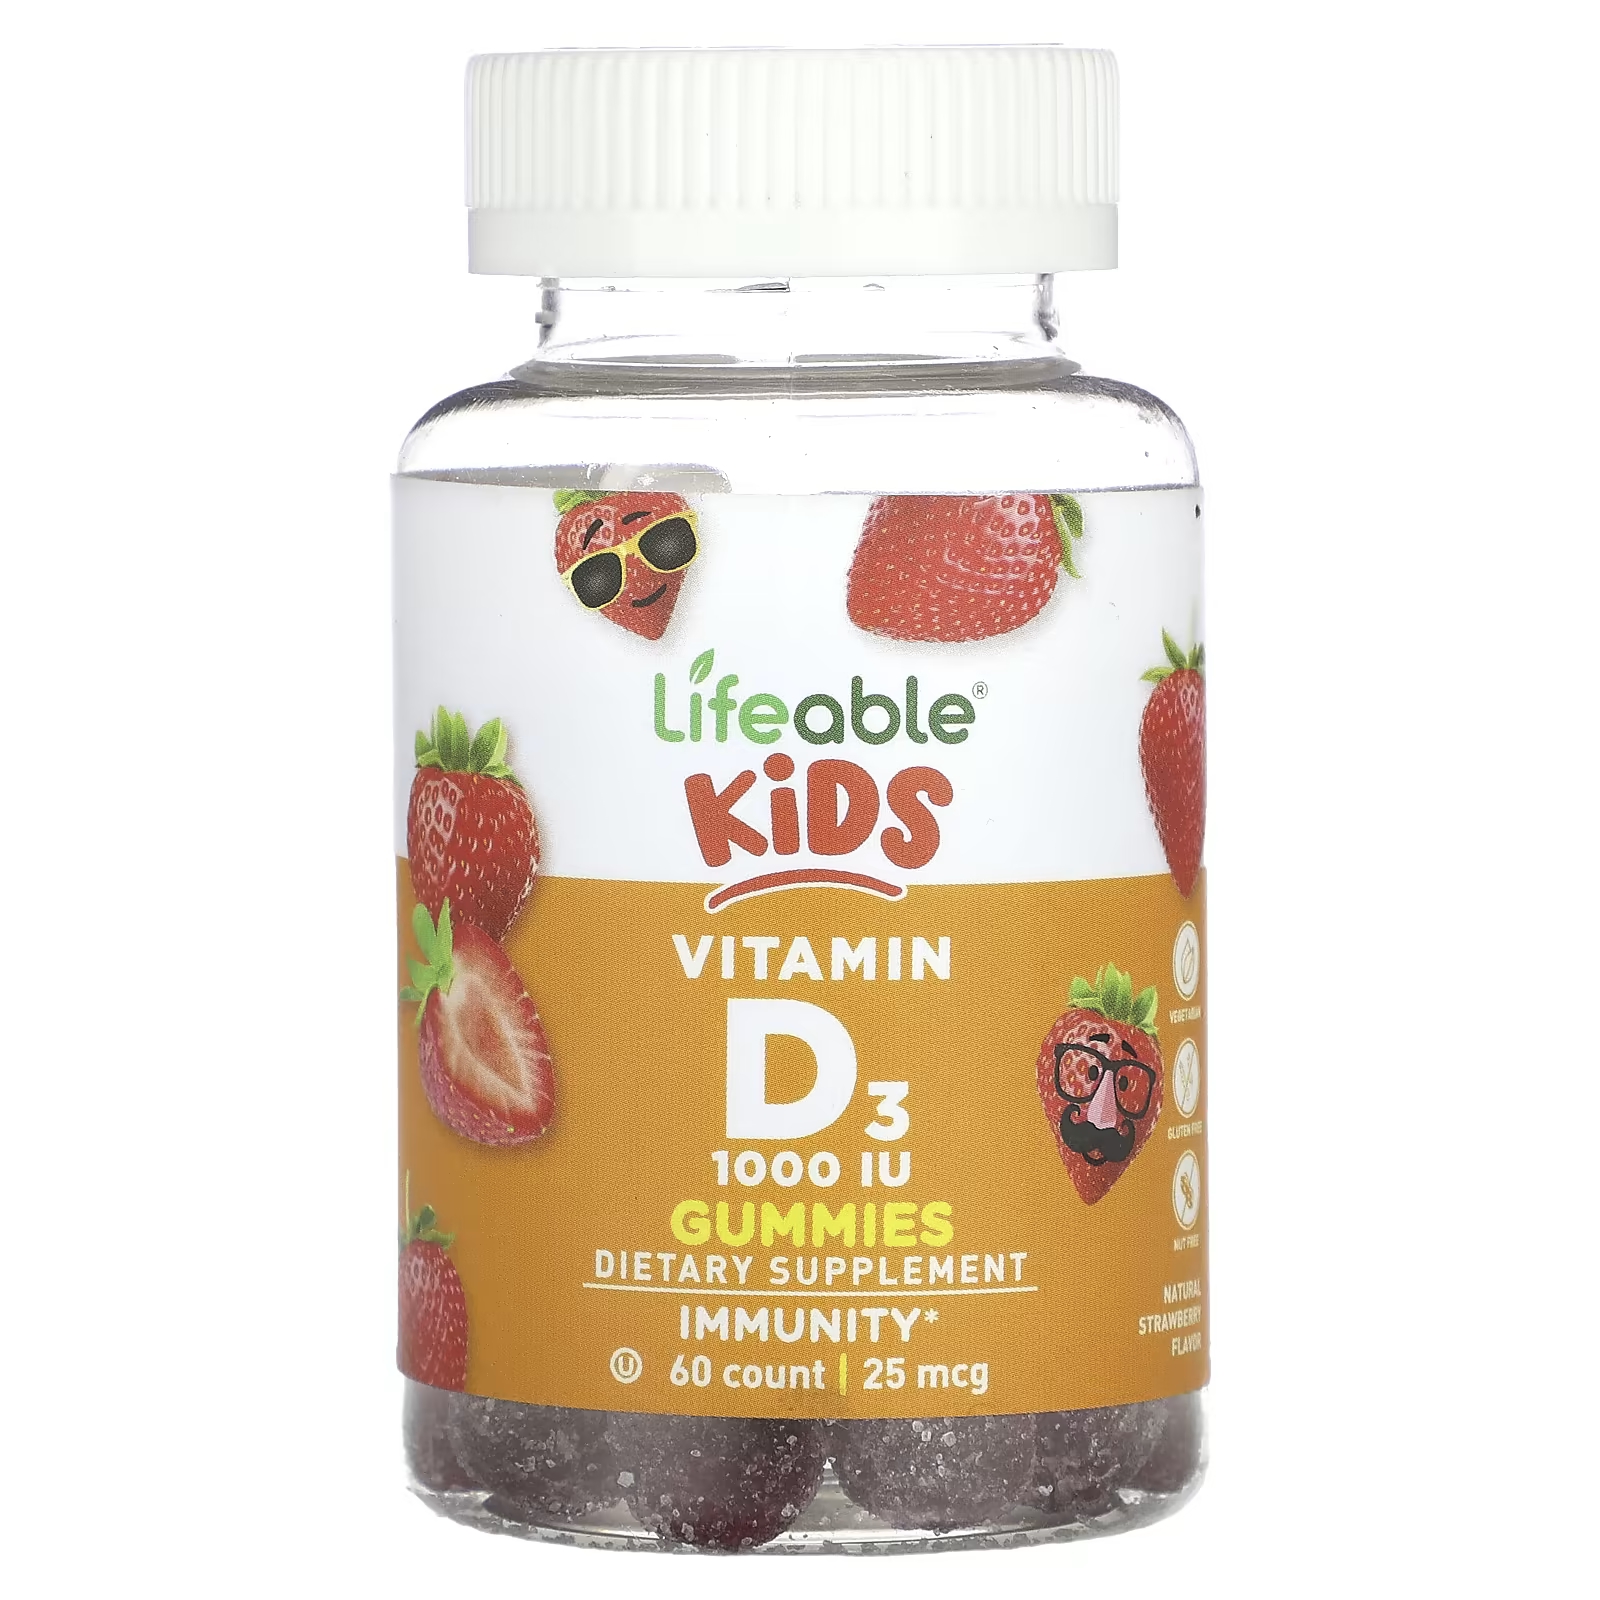 Жевательные конфеты Lifeable Kids с витамином D3, натуральная клубника, 25 мкг (1000 МЕ), 60 жевательных таблеток vitamatic жевательные мармеладки с витамином d3 натуральная клубника 1000 ме 25 мкг 120 жевательных таблеток